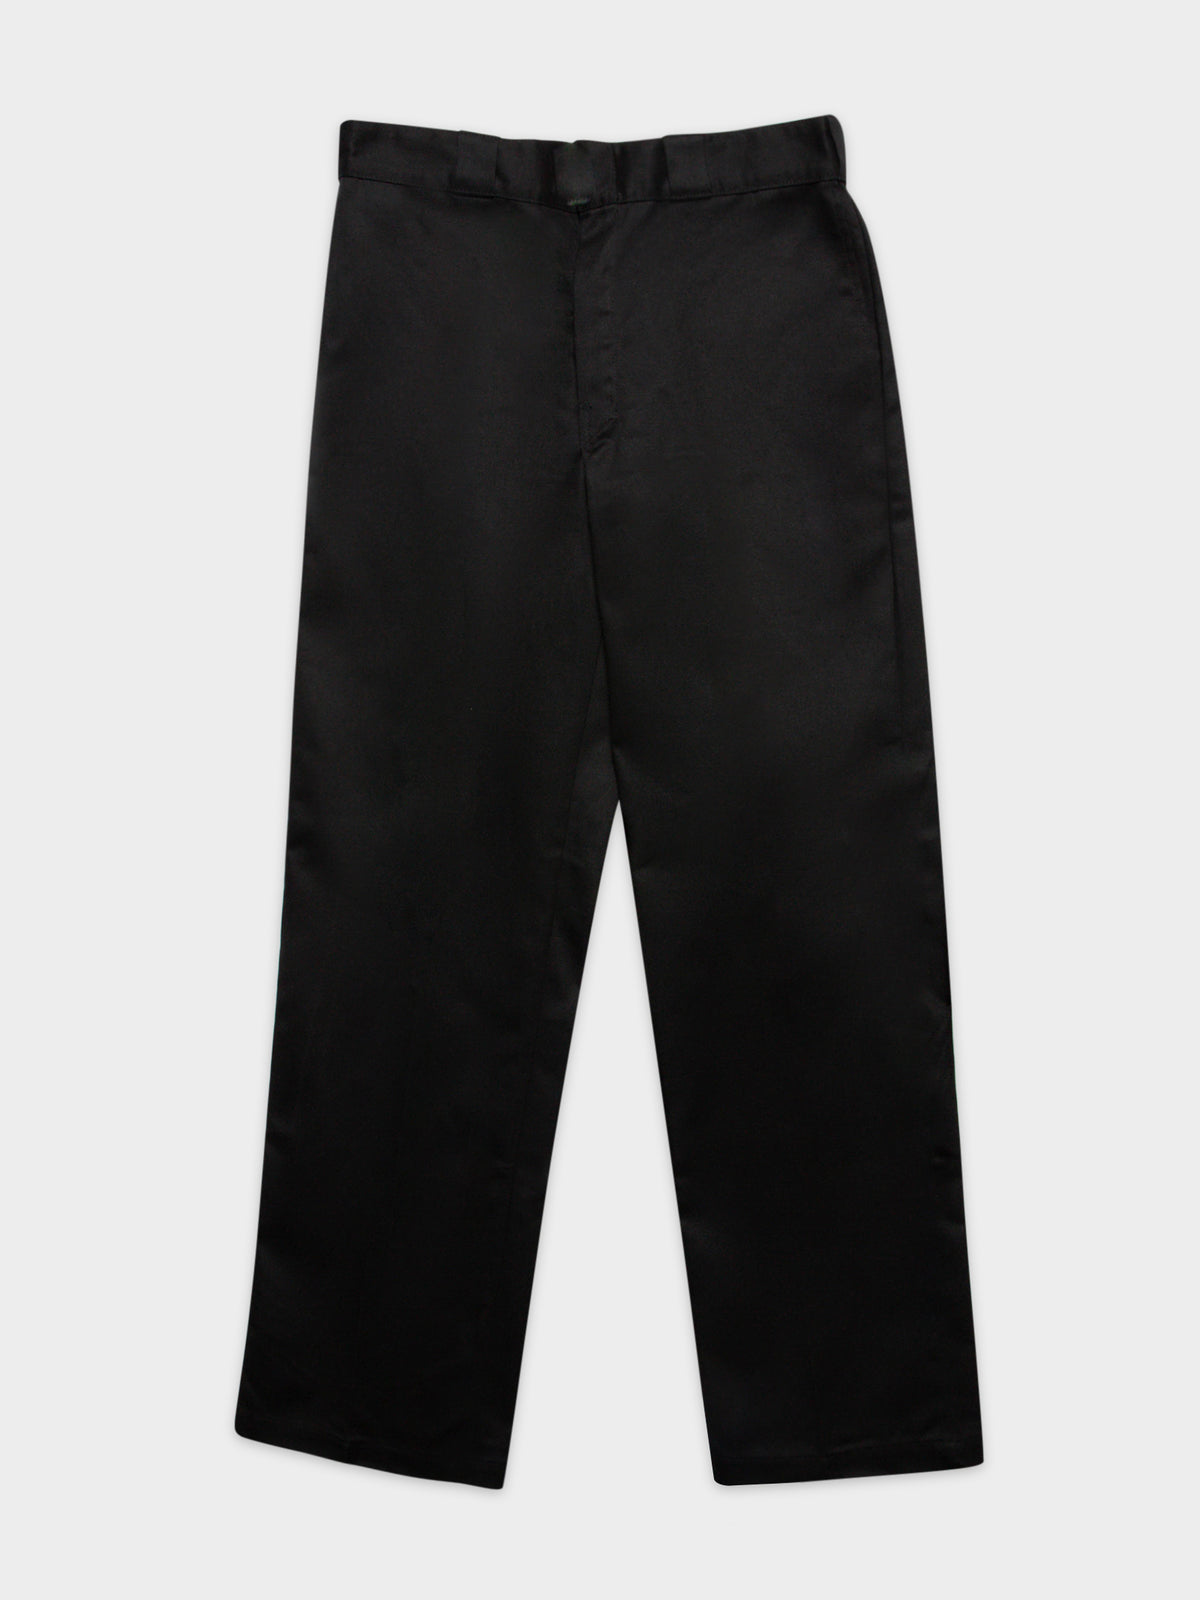 Original 874 Pants in Black